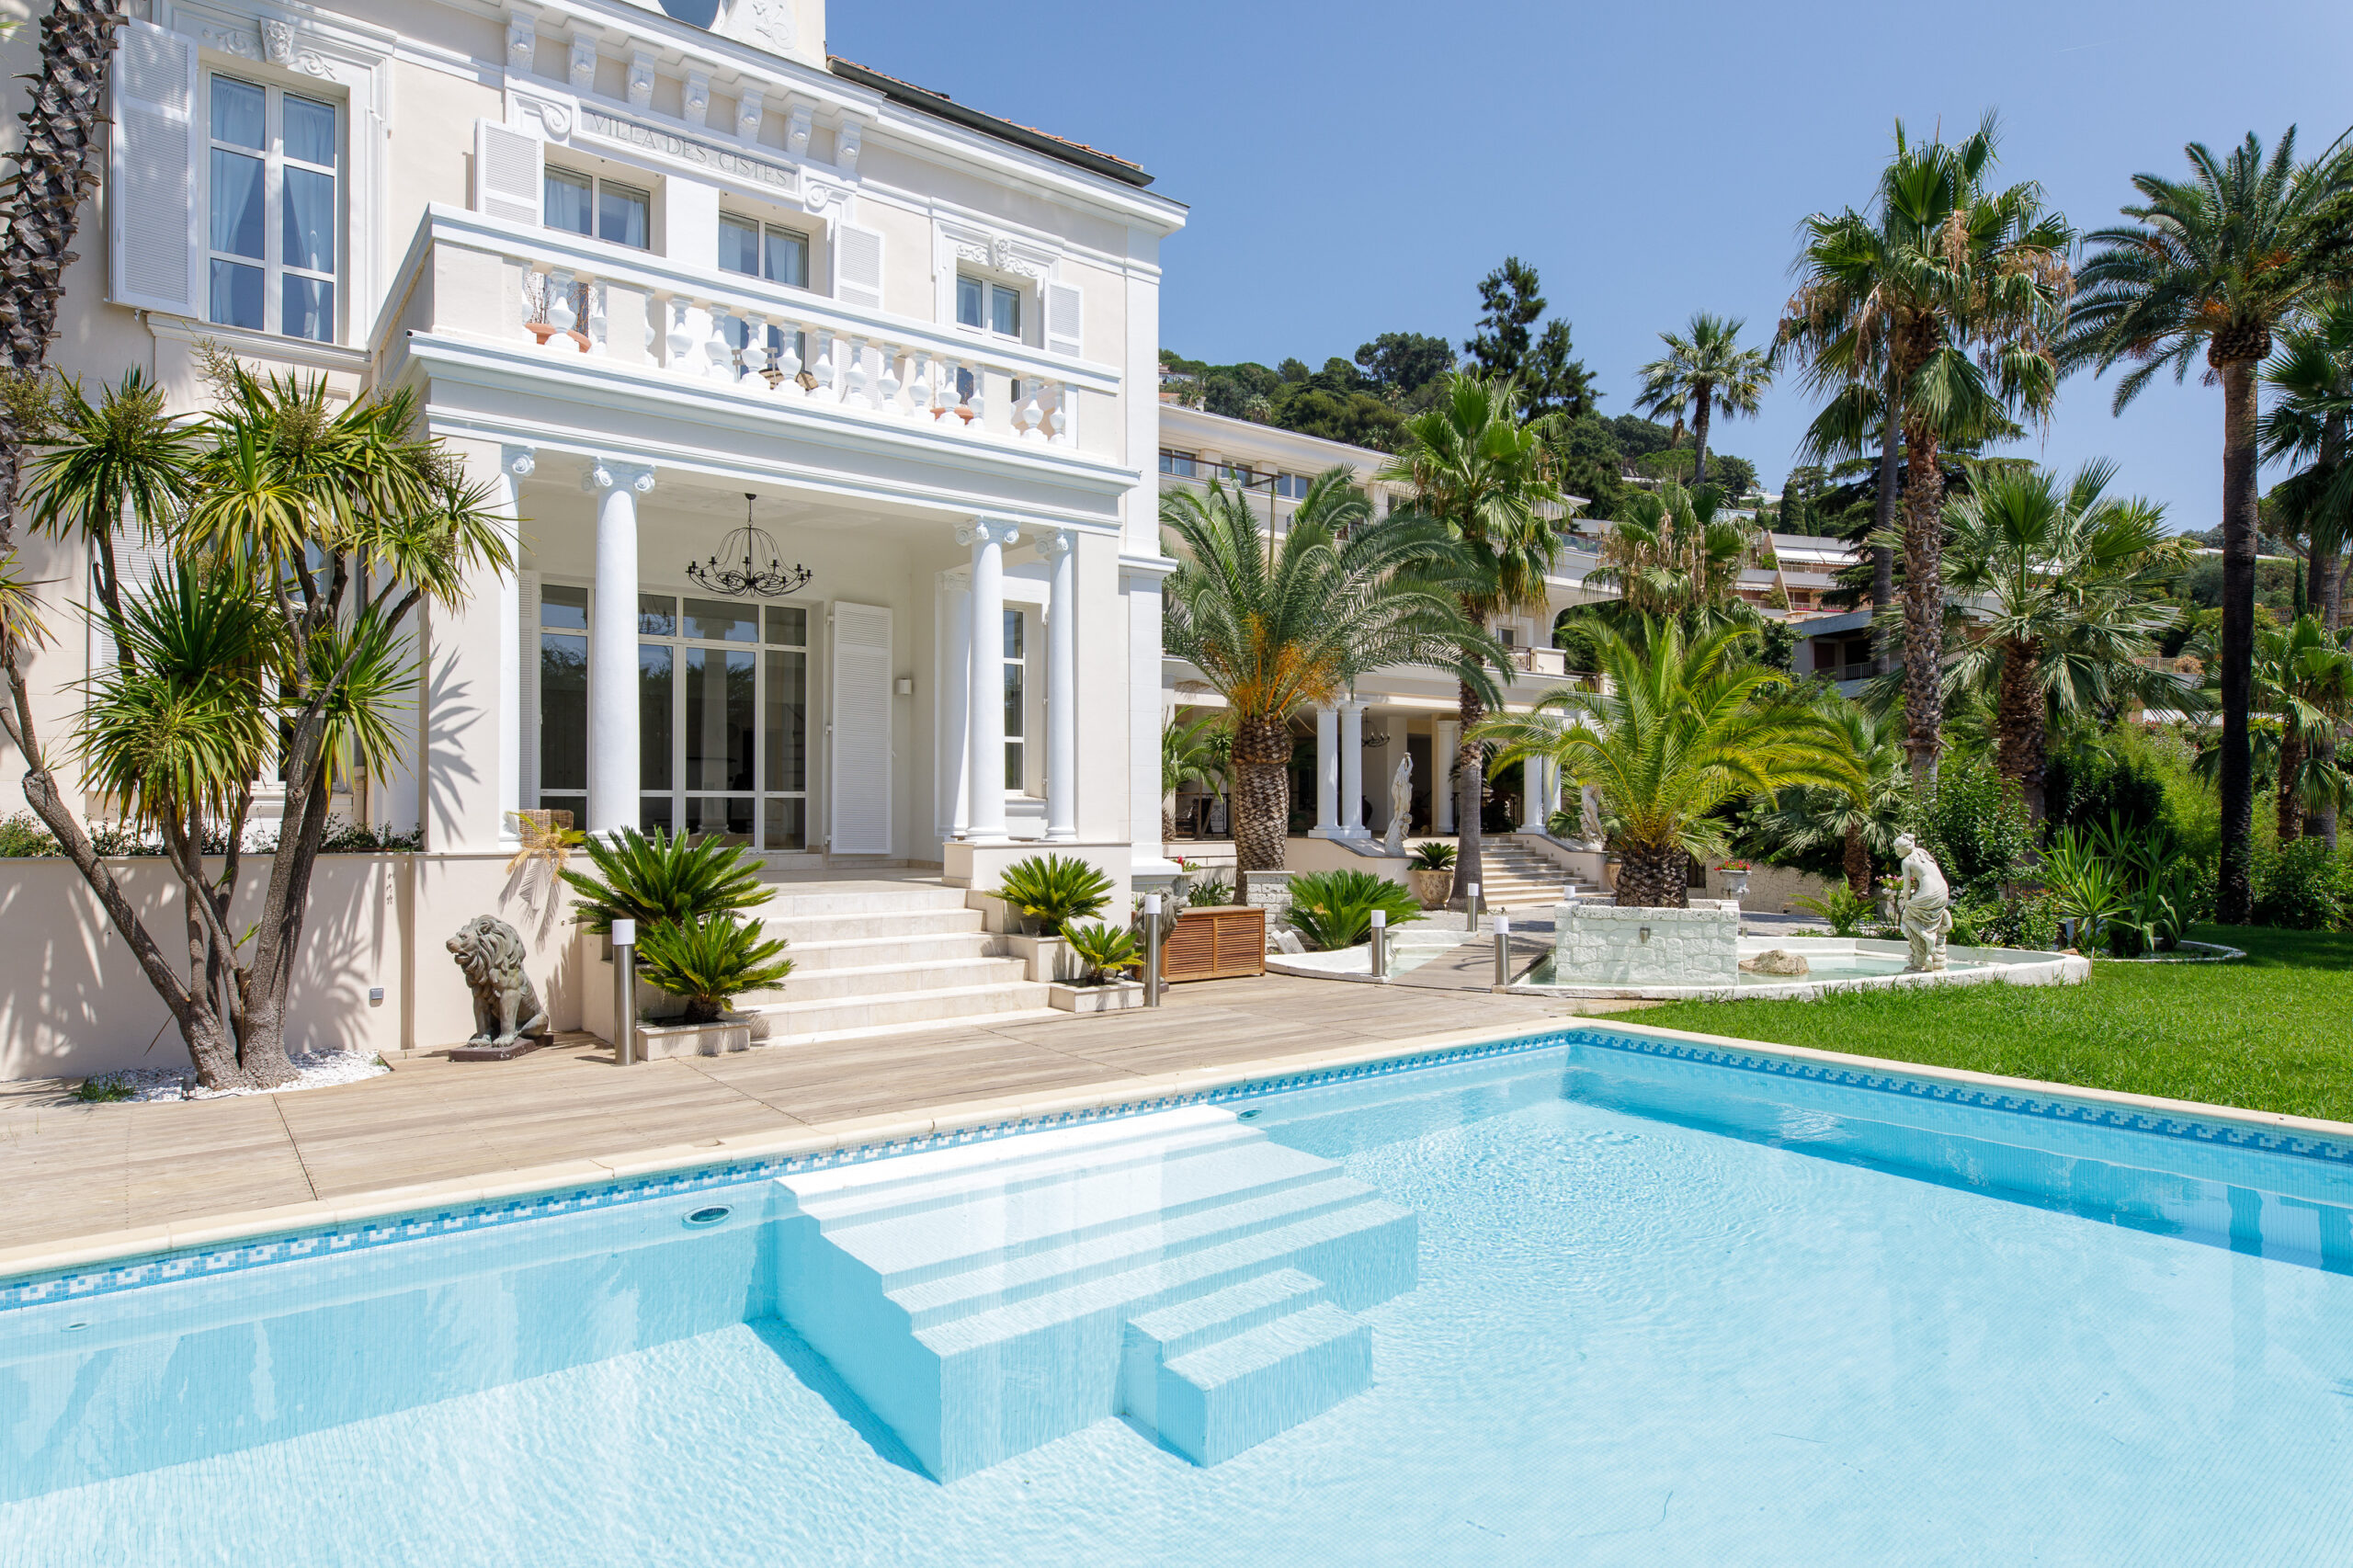 Villa haut de gamme au centre ville de Cannes